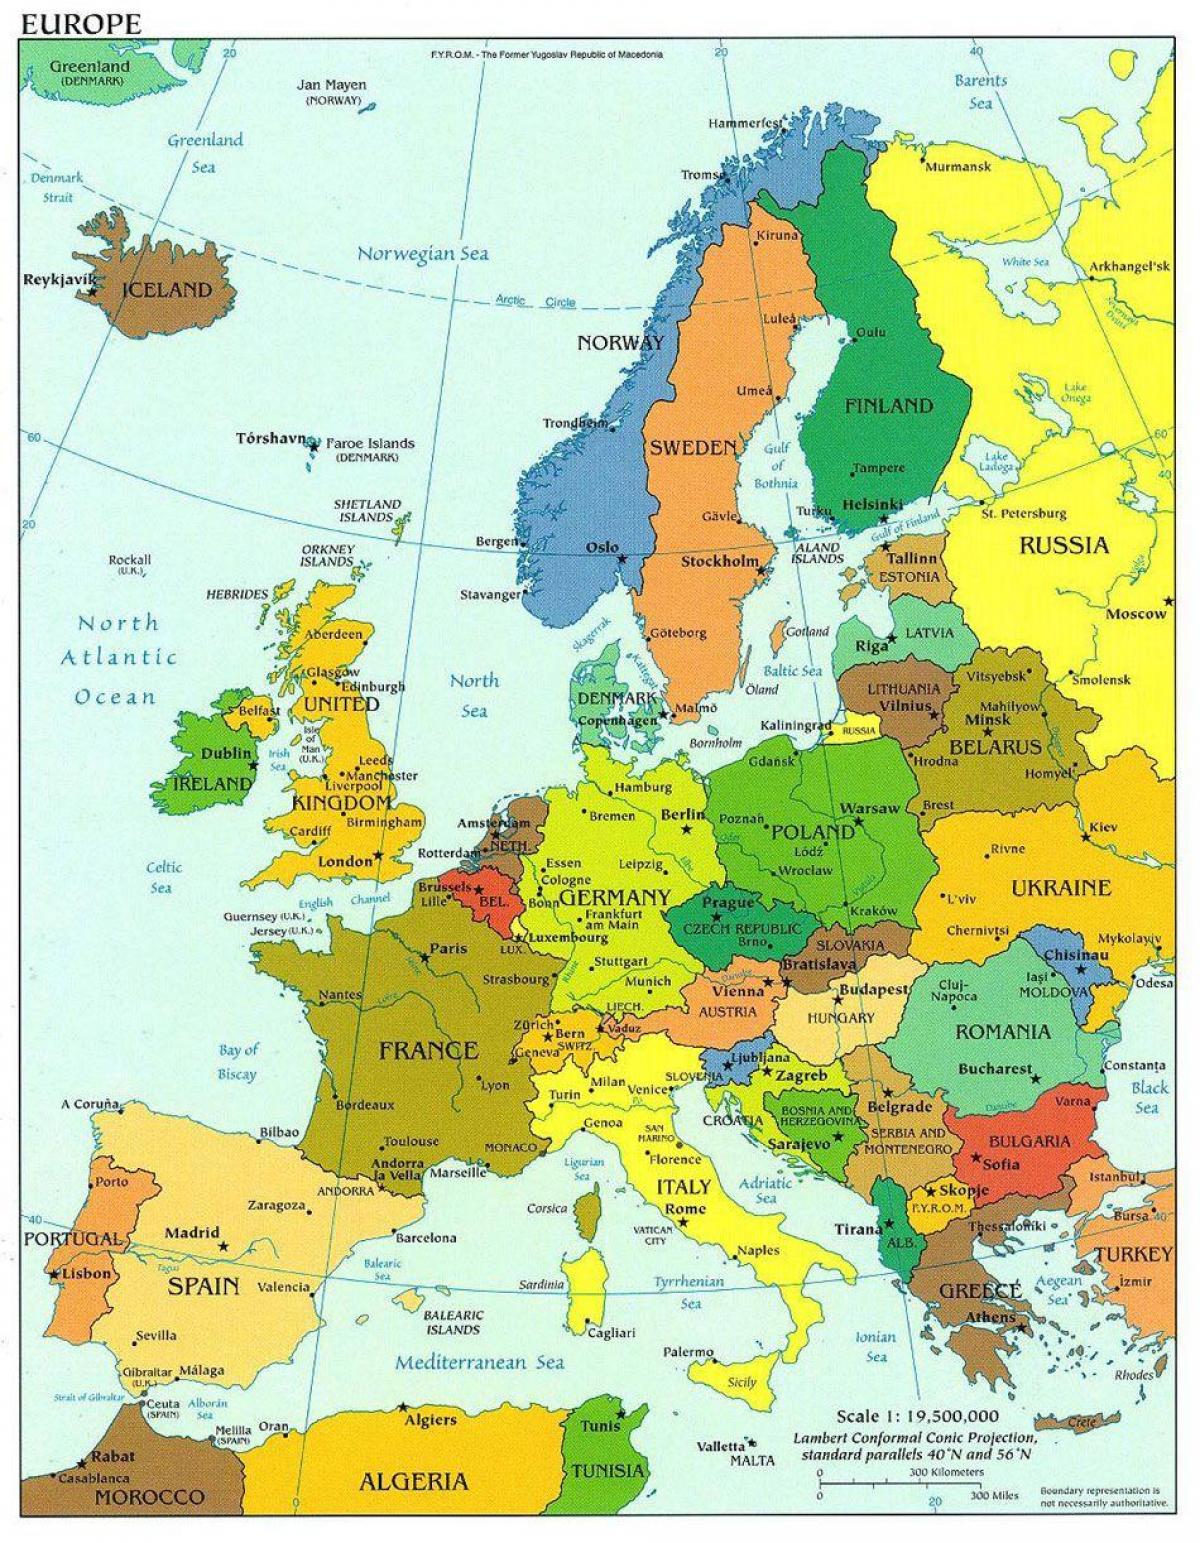 欧洲地图表示丹麦